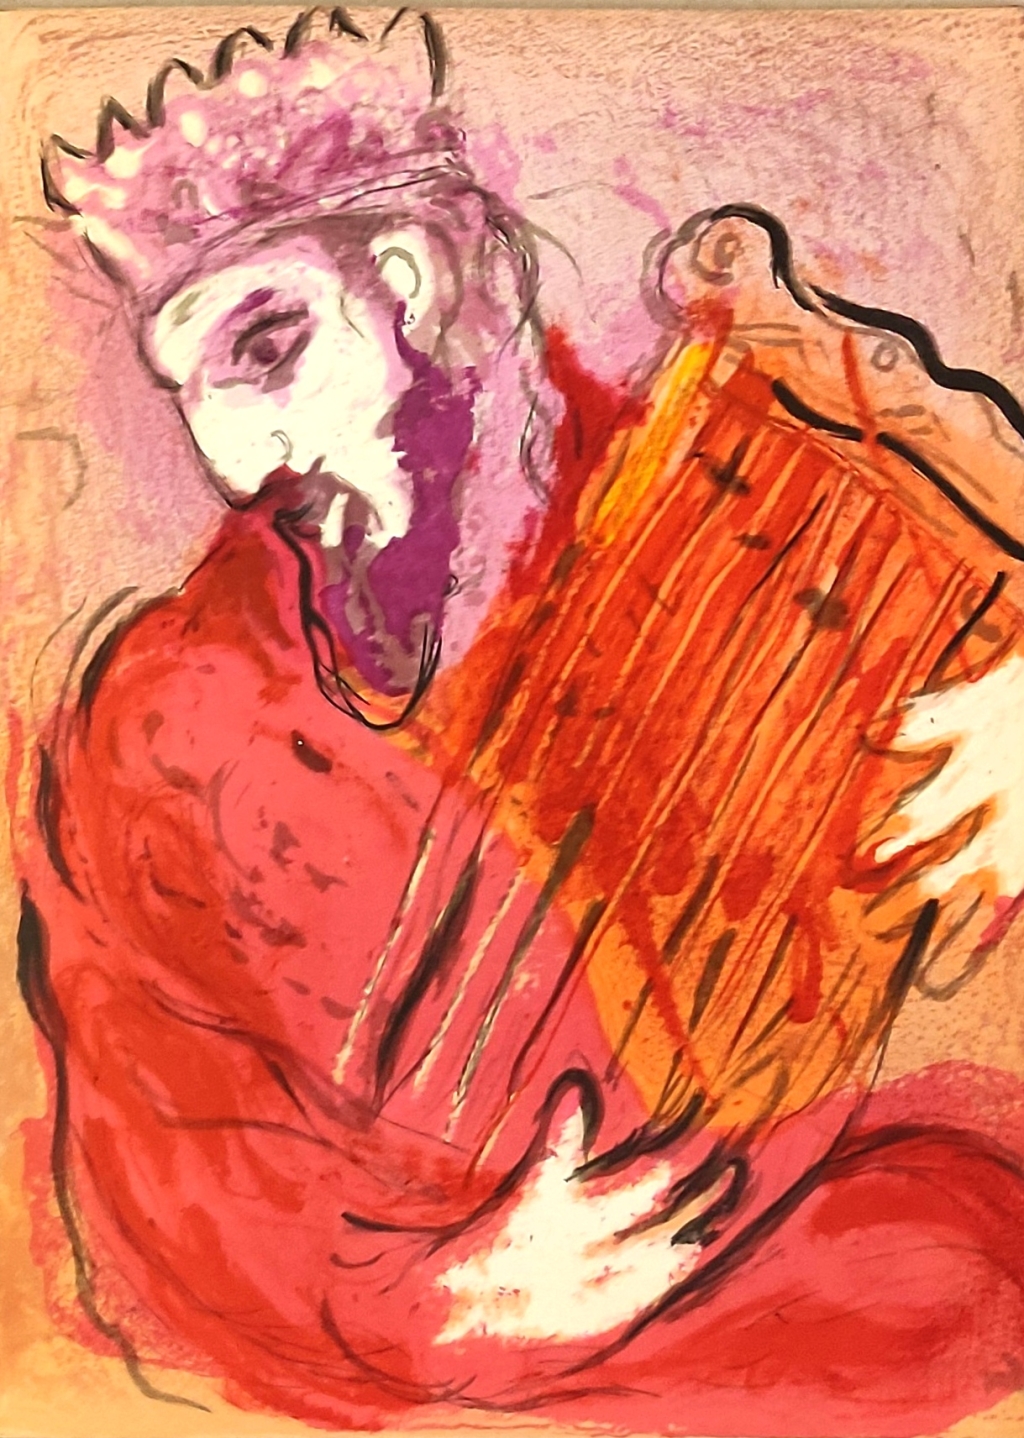 [grafika, 1956] David à la Harpe [Dawid z harfą]